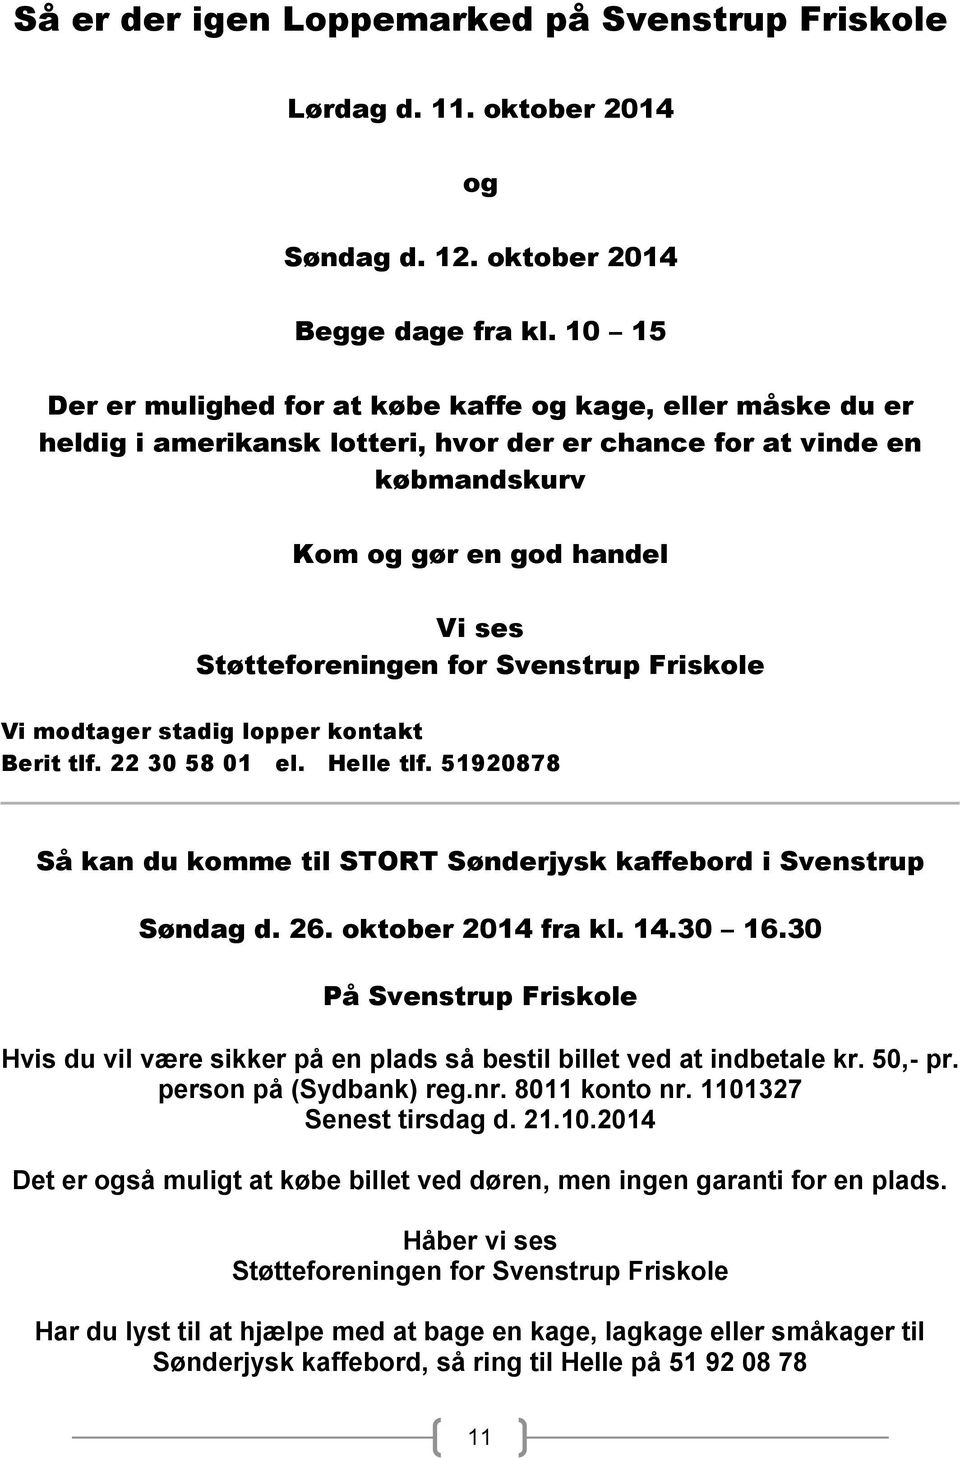 Svenstrup Friskole Vi modtager stadig lopper kontakt Berit tlf. 22 30 58 01 el. Helle tlf. 51920878 Så kan du komme til STORT Sønderjysk kaffebord i Svenstrup Søndag d. 26. oktober 2014 fra kl. 14.